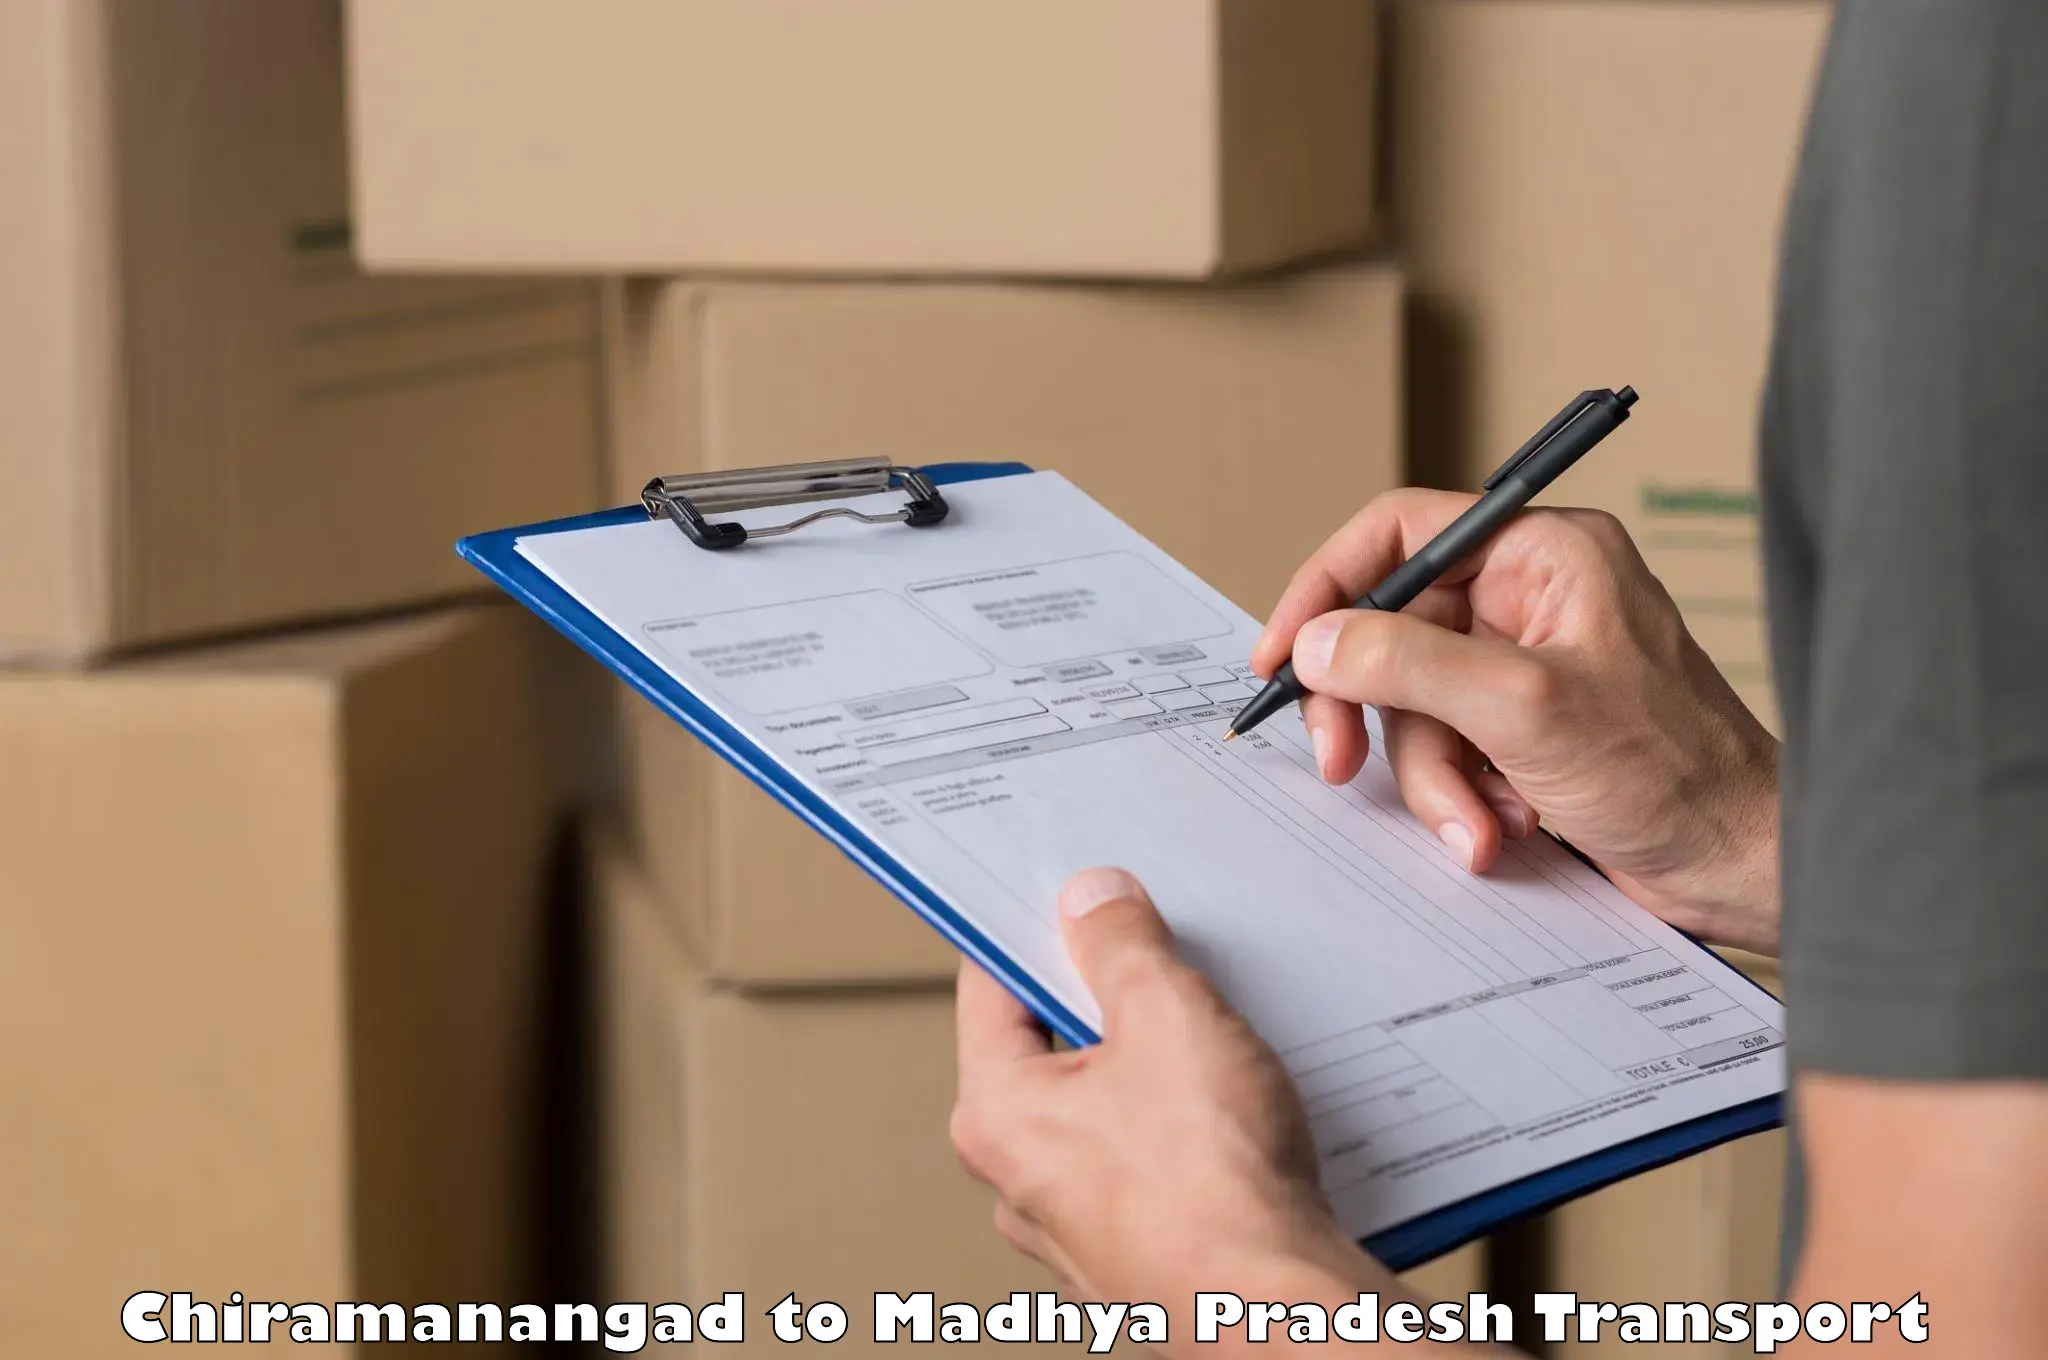 Shipping partner Chiramanangad to Madhya Pradesh